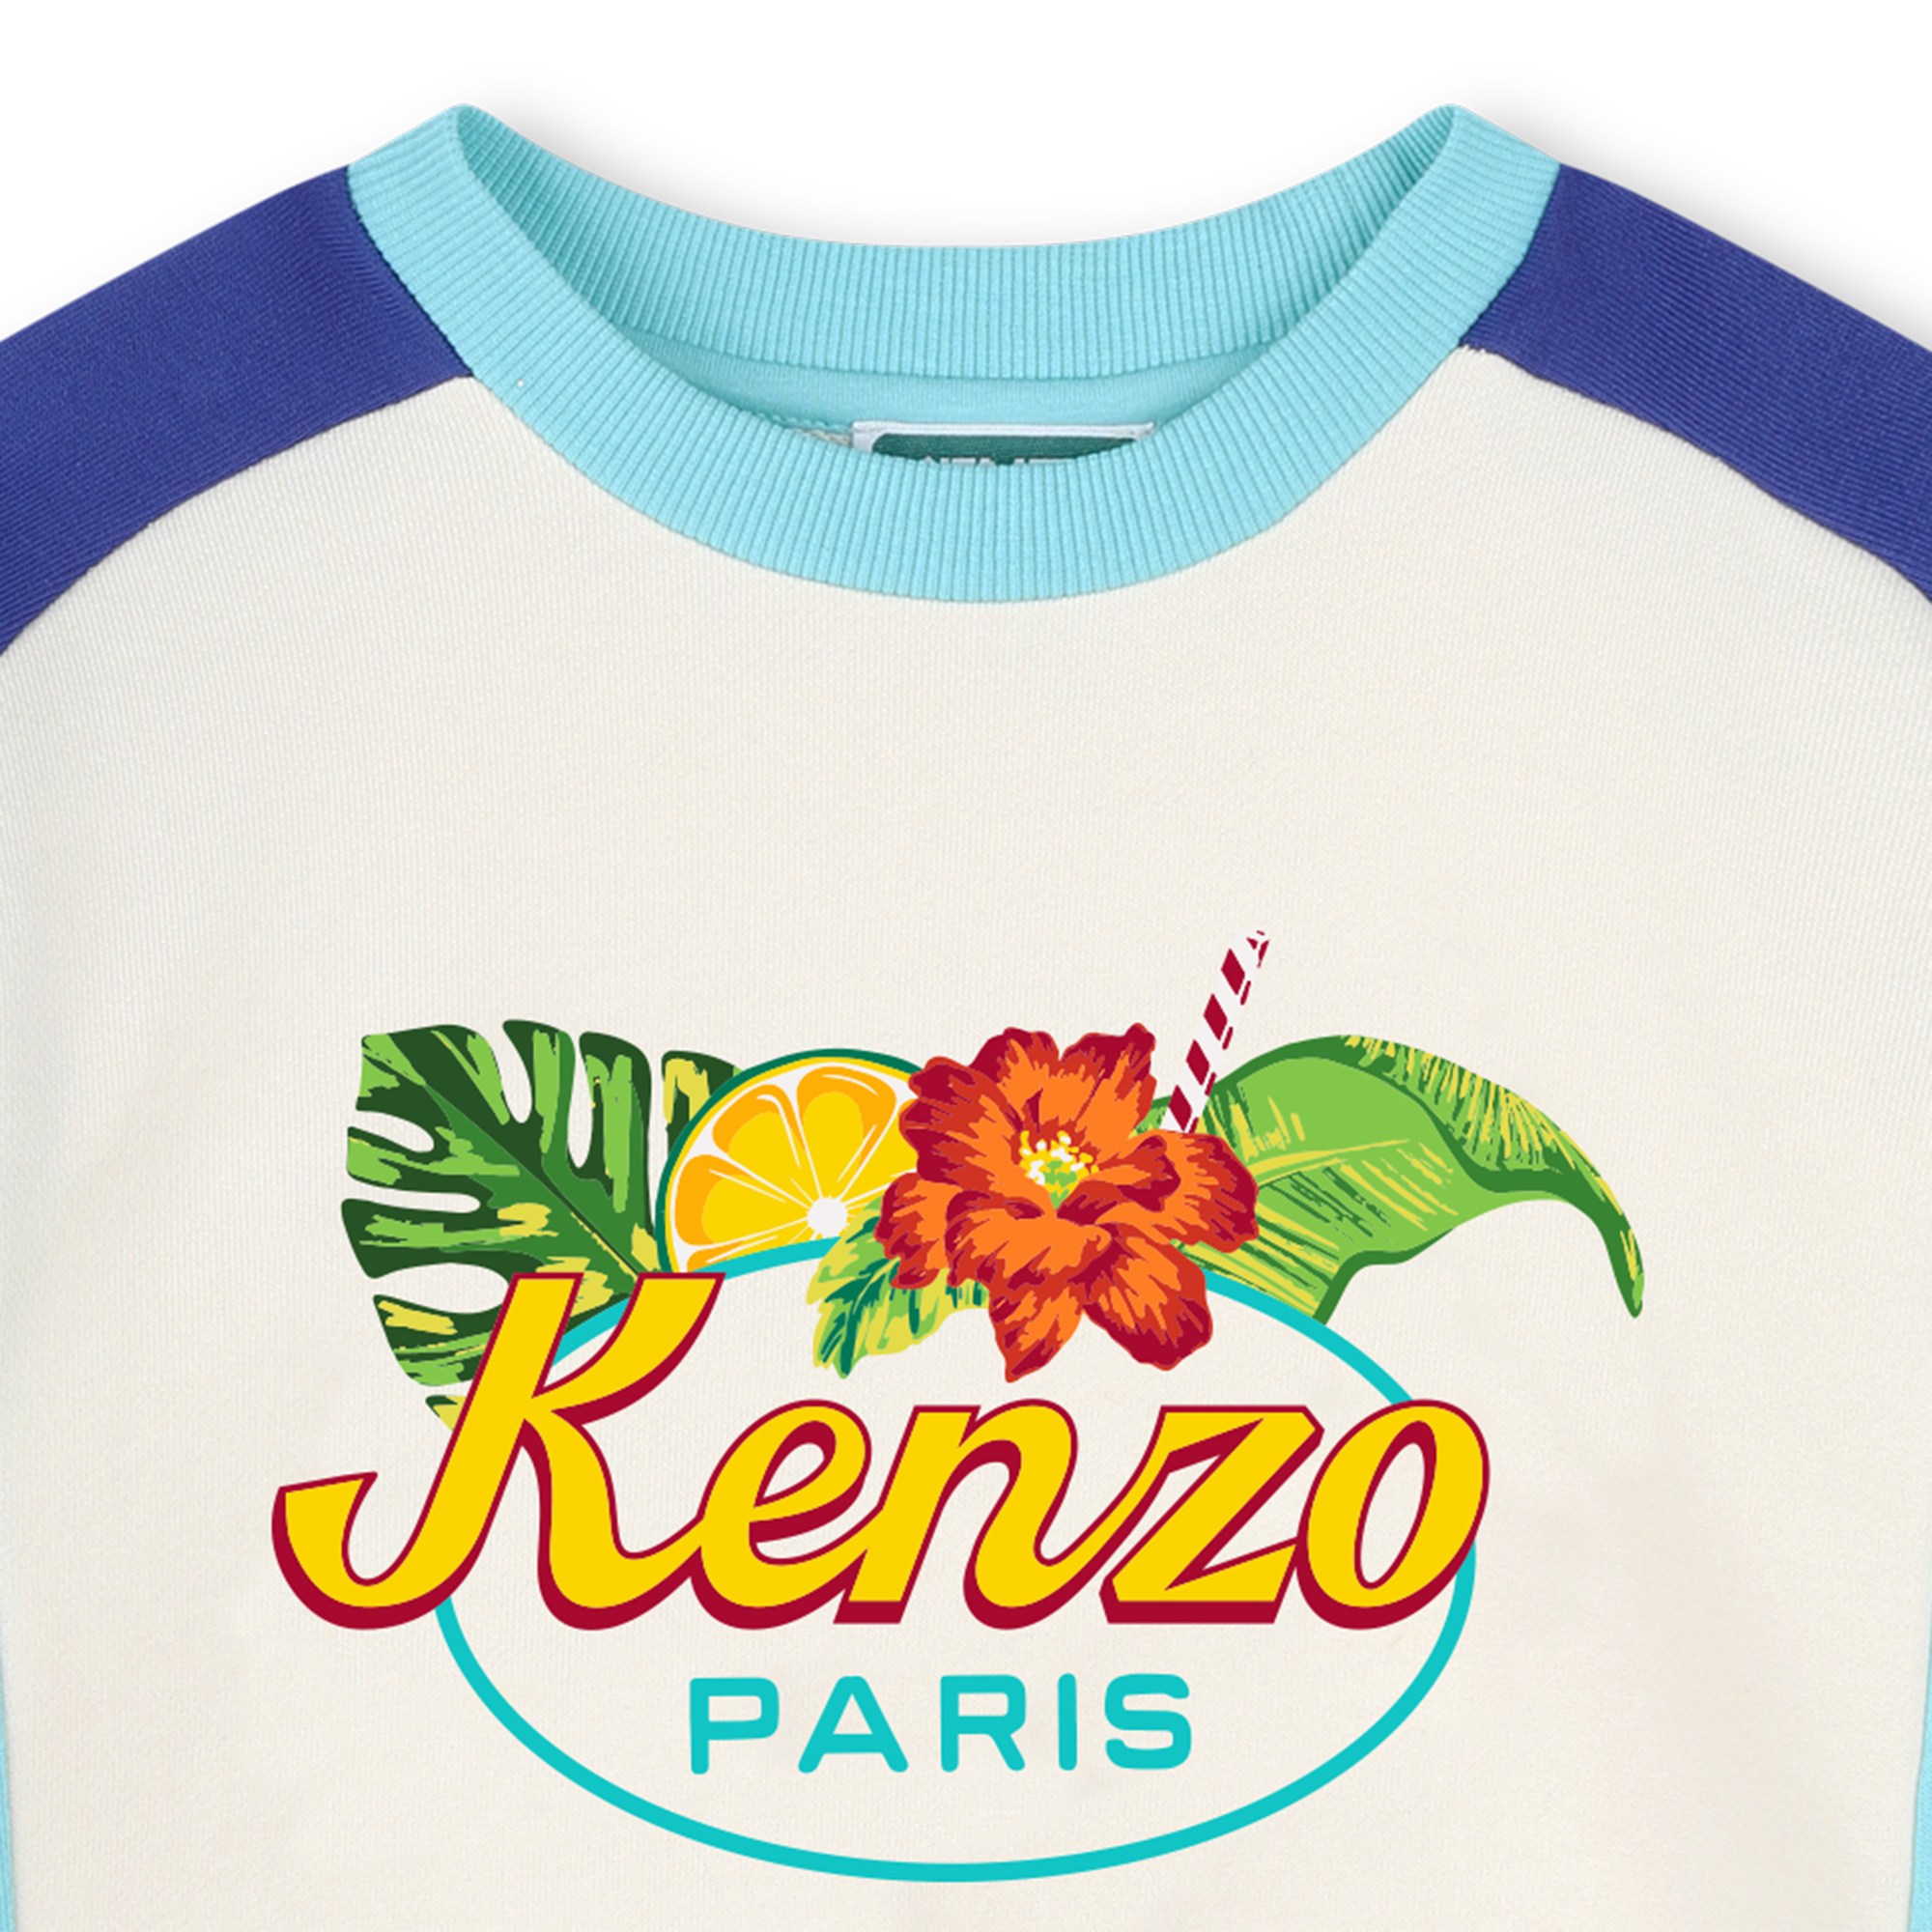 Fleece sweatshirt KENZO KIDS for BOY